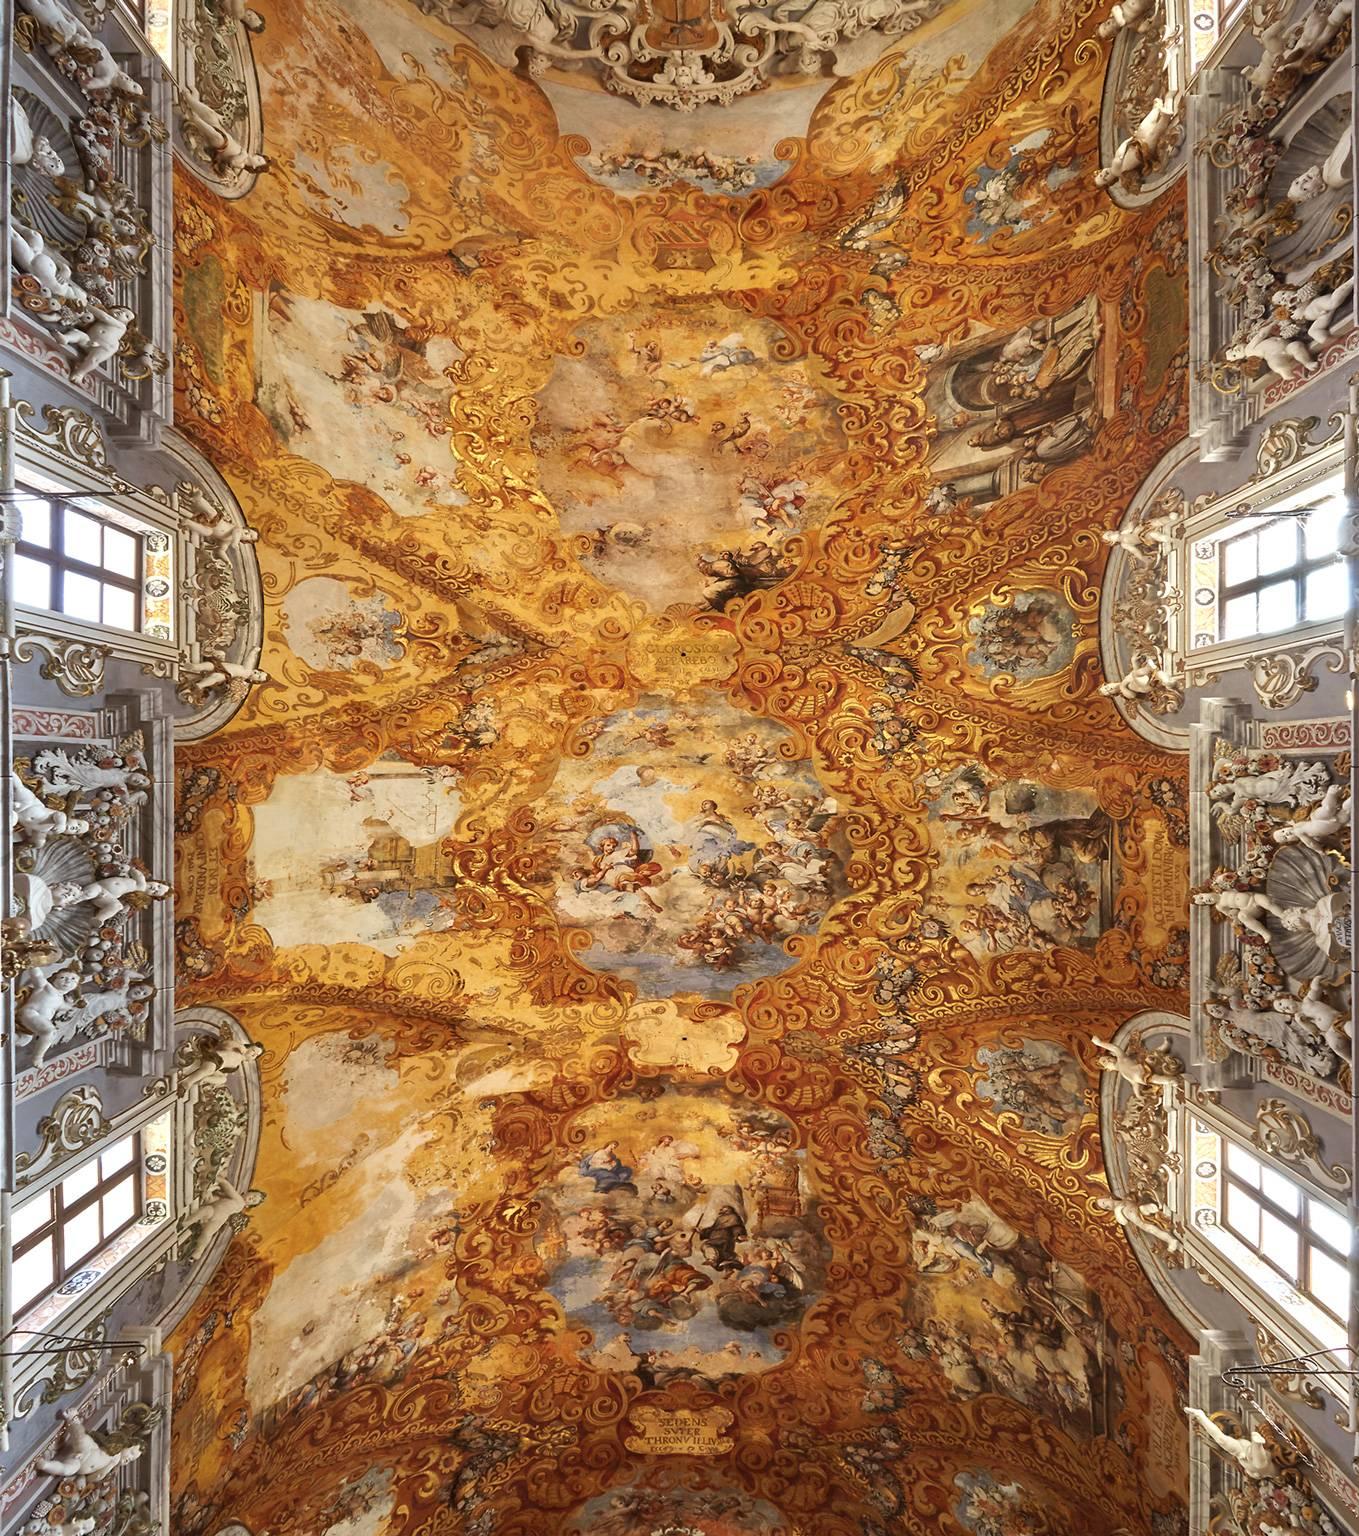 Frank Schott Color Photograph – Hallelujah - Großformatfotografie einer barocken italienischen Palazzofriss-Deckendecke im Barockstil